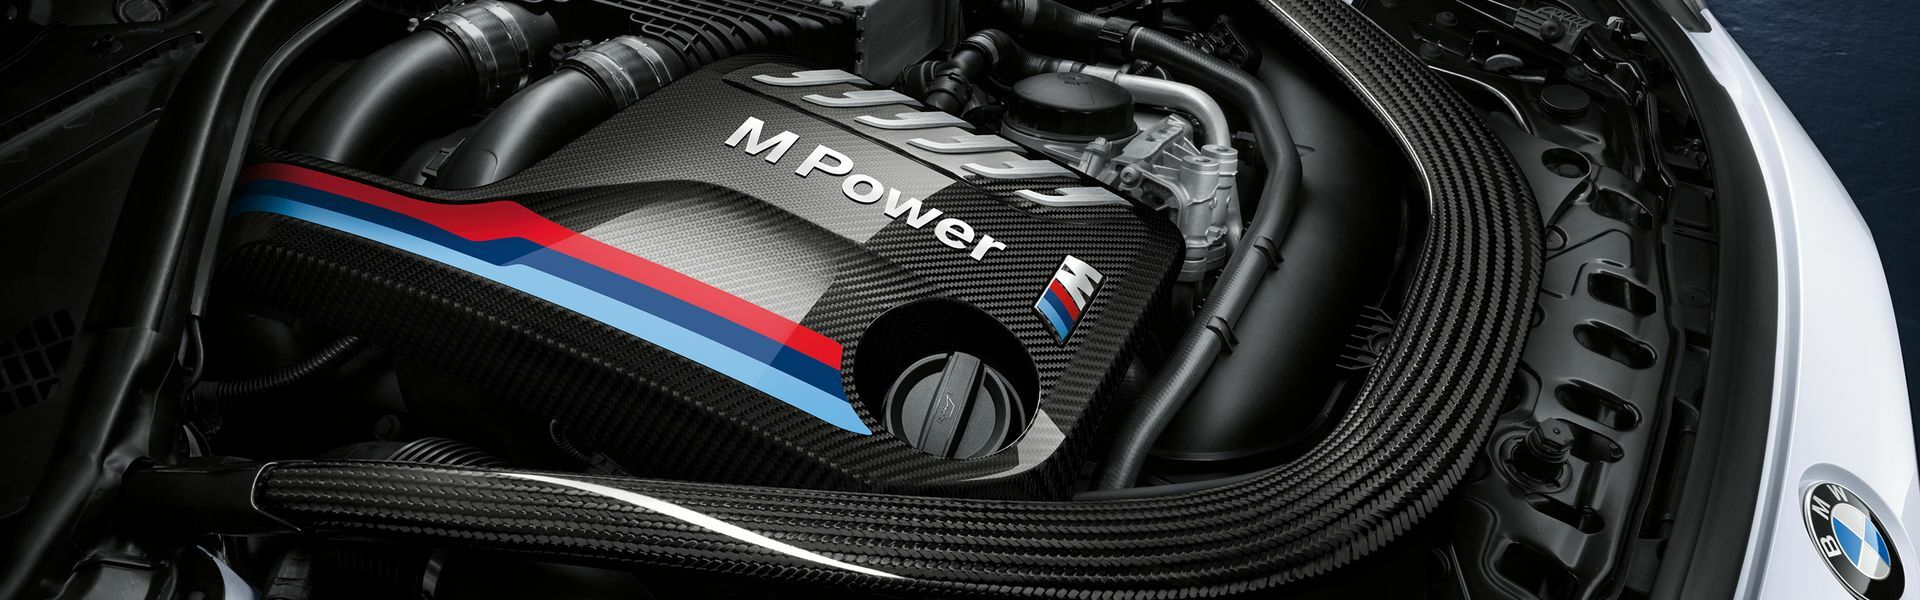 Zvýšení výkonu/ Softwarové úpravy/ Drobné performance díly pro automobil Porsche 911 Turbo/Turbo S 997 FL